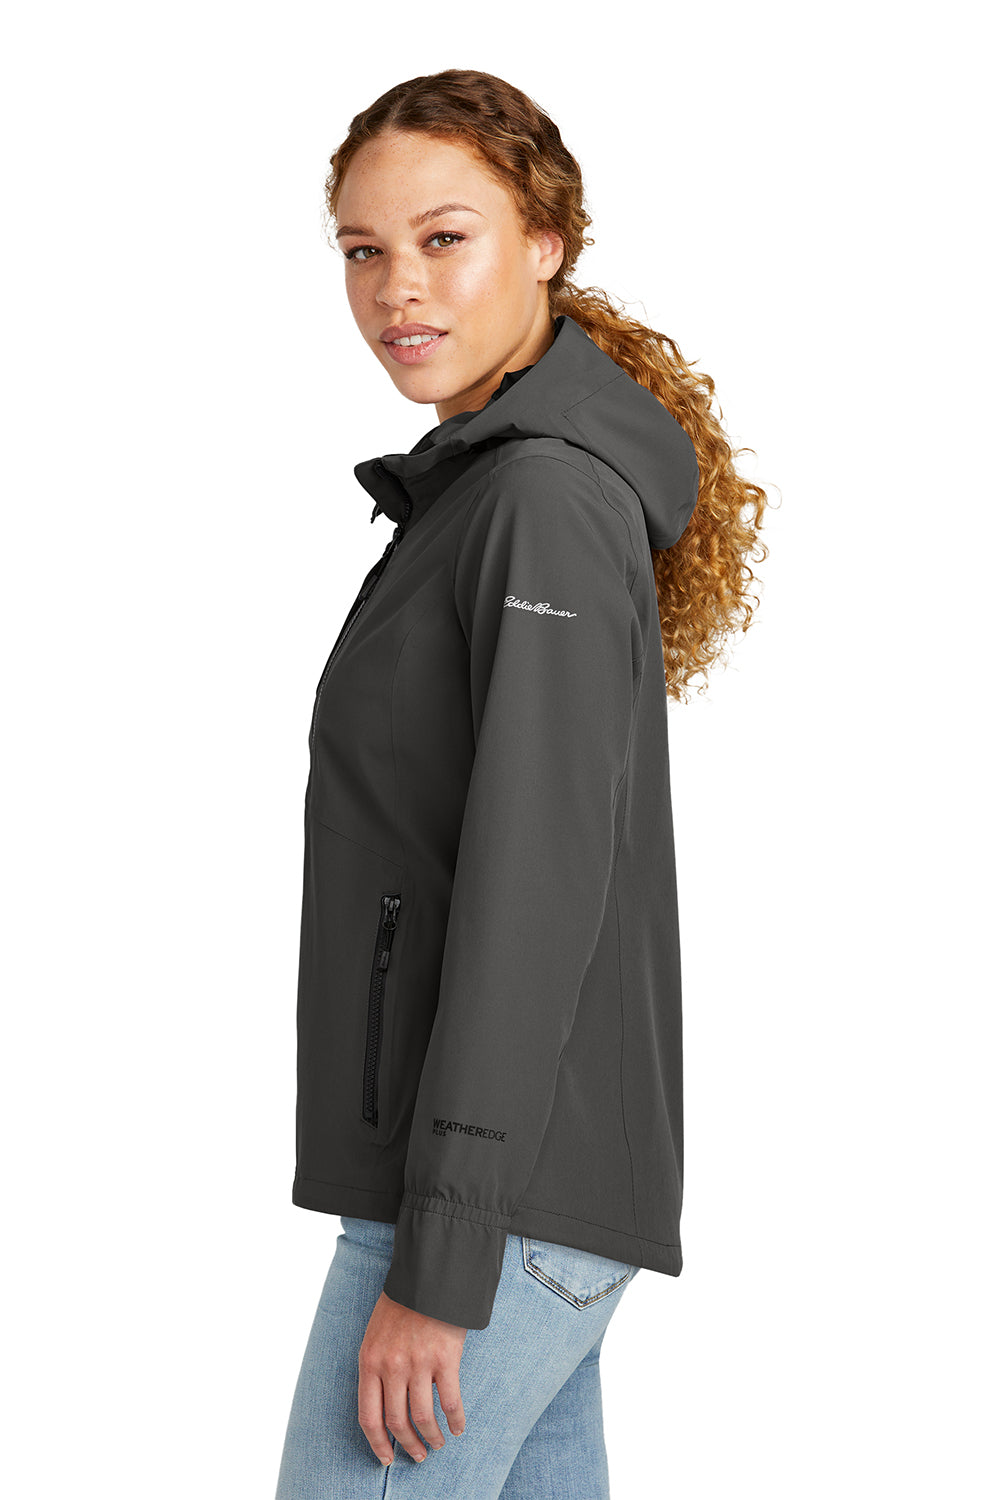 Eddie Bauer EB561 Womens WeatherEdge Plus Waterproof Full Zip Hooded Jacket Iron Gate Grey Model Side